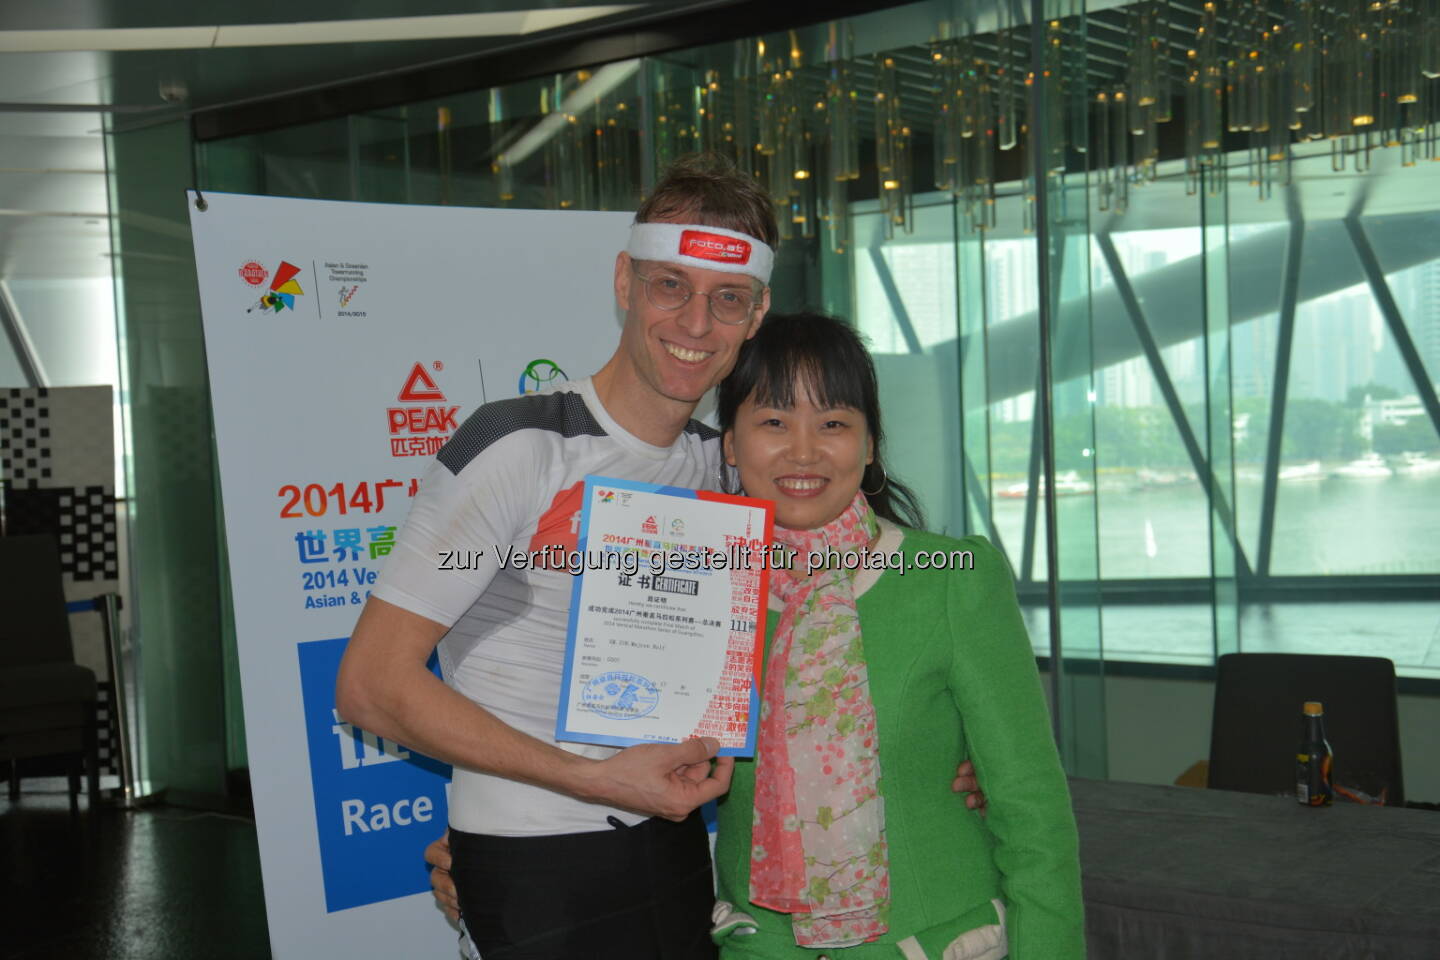 Rolf Majcen: Treppenlauf im 600 Meter hohen Canton Tower in Guangzhou. Es ist der zweitlängste Treppenlauf der Welt. Wir mussten 445 Höhenmeter zur Aussichtsterrasse hinauflaufen, 2560 Stufen. Nach 17,45 Minuten finishte ich als 15. und war sehr glücklich das mir selbst gesteckte Ziel - Top 15 - auch diesmal wieder erreicht haben zu können